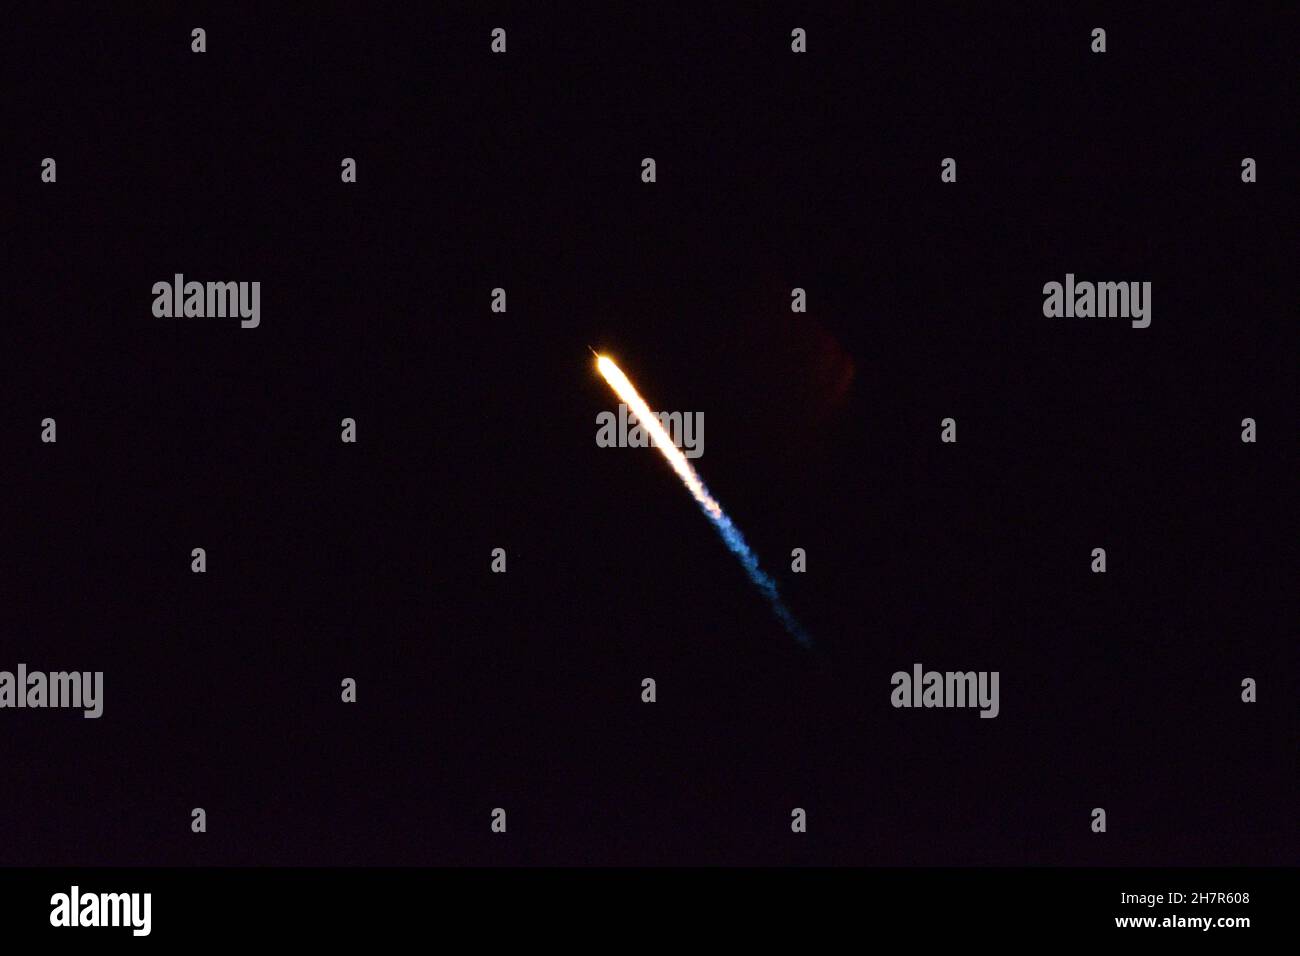 El combustible quemado por un cohete Falcon 9 ilumina el cielo nocturno. Foto de stock